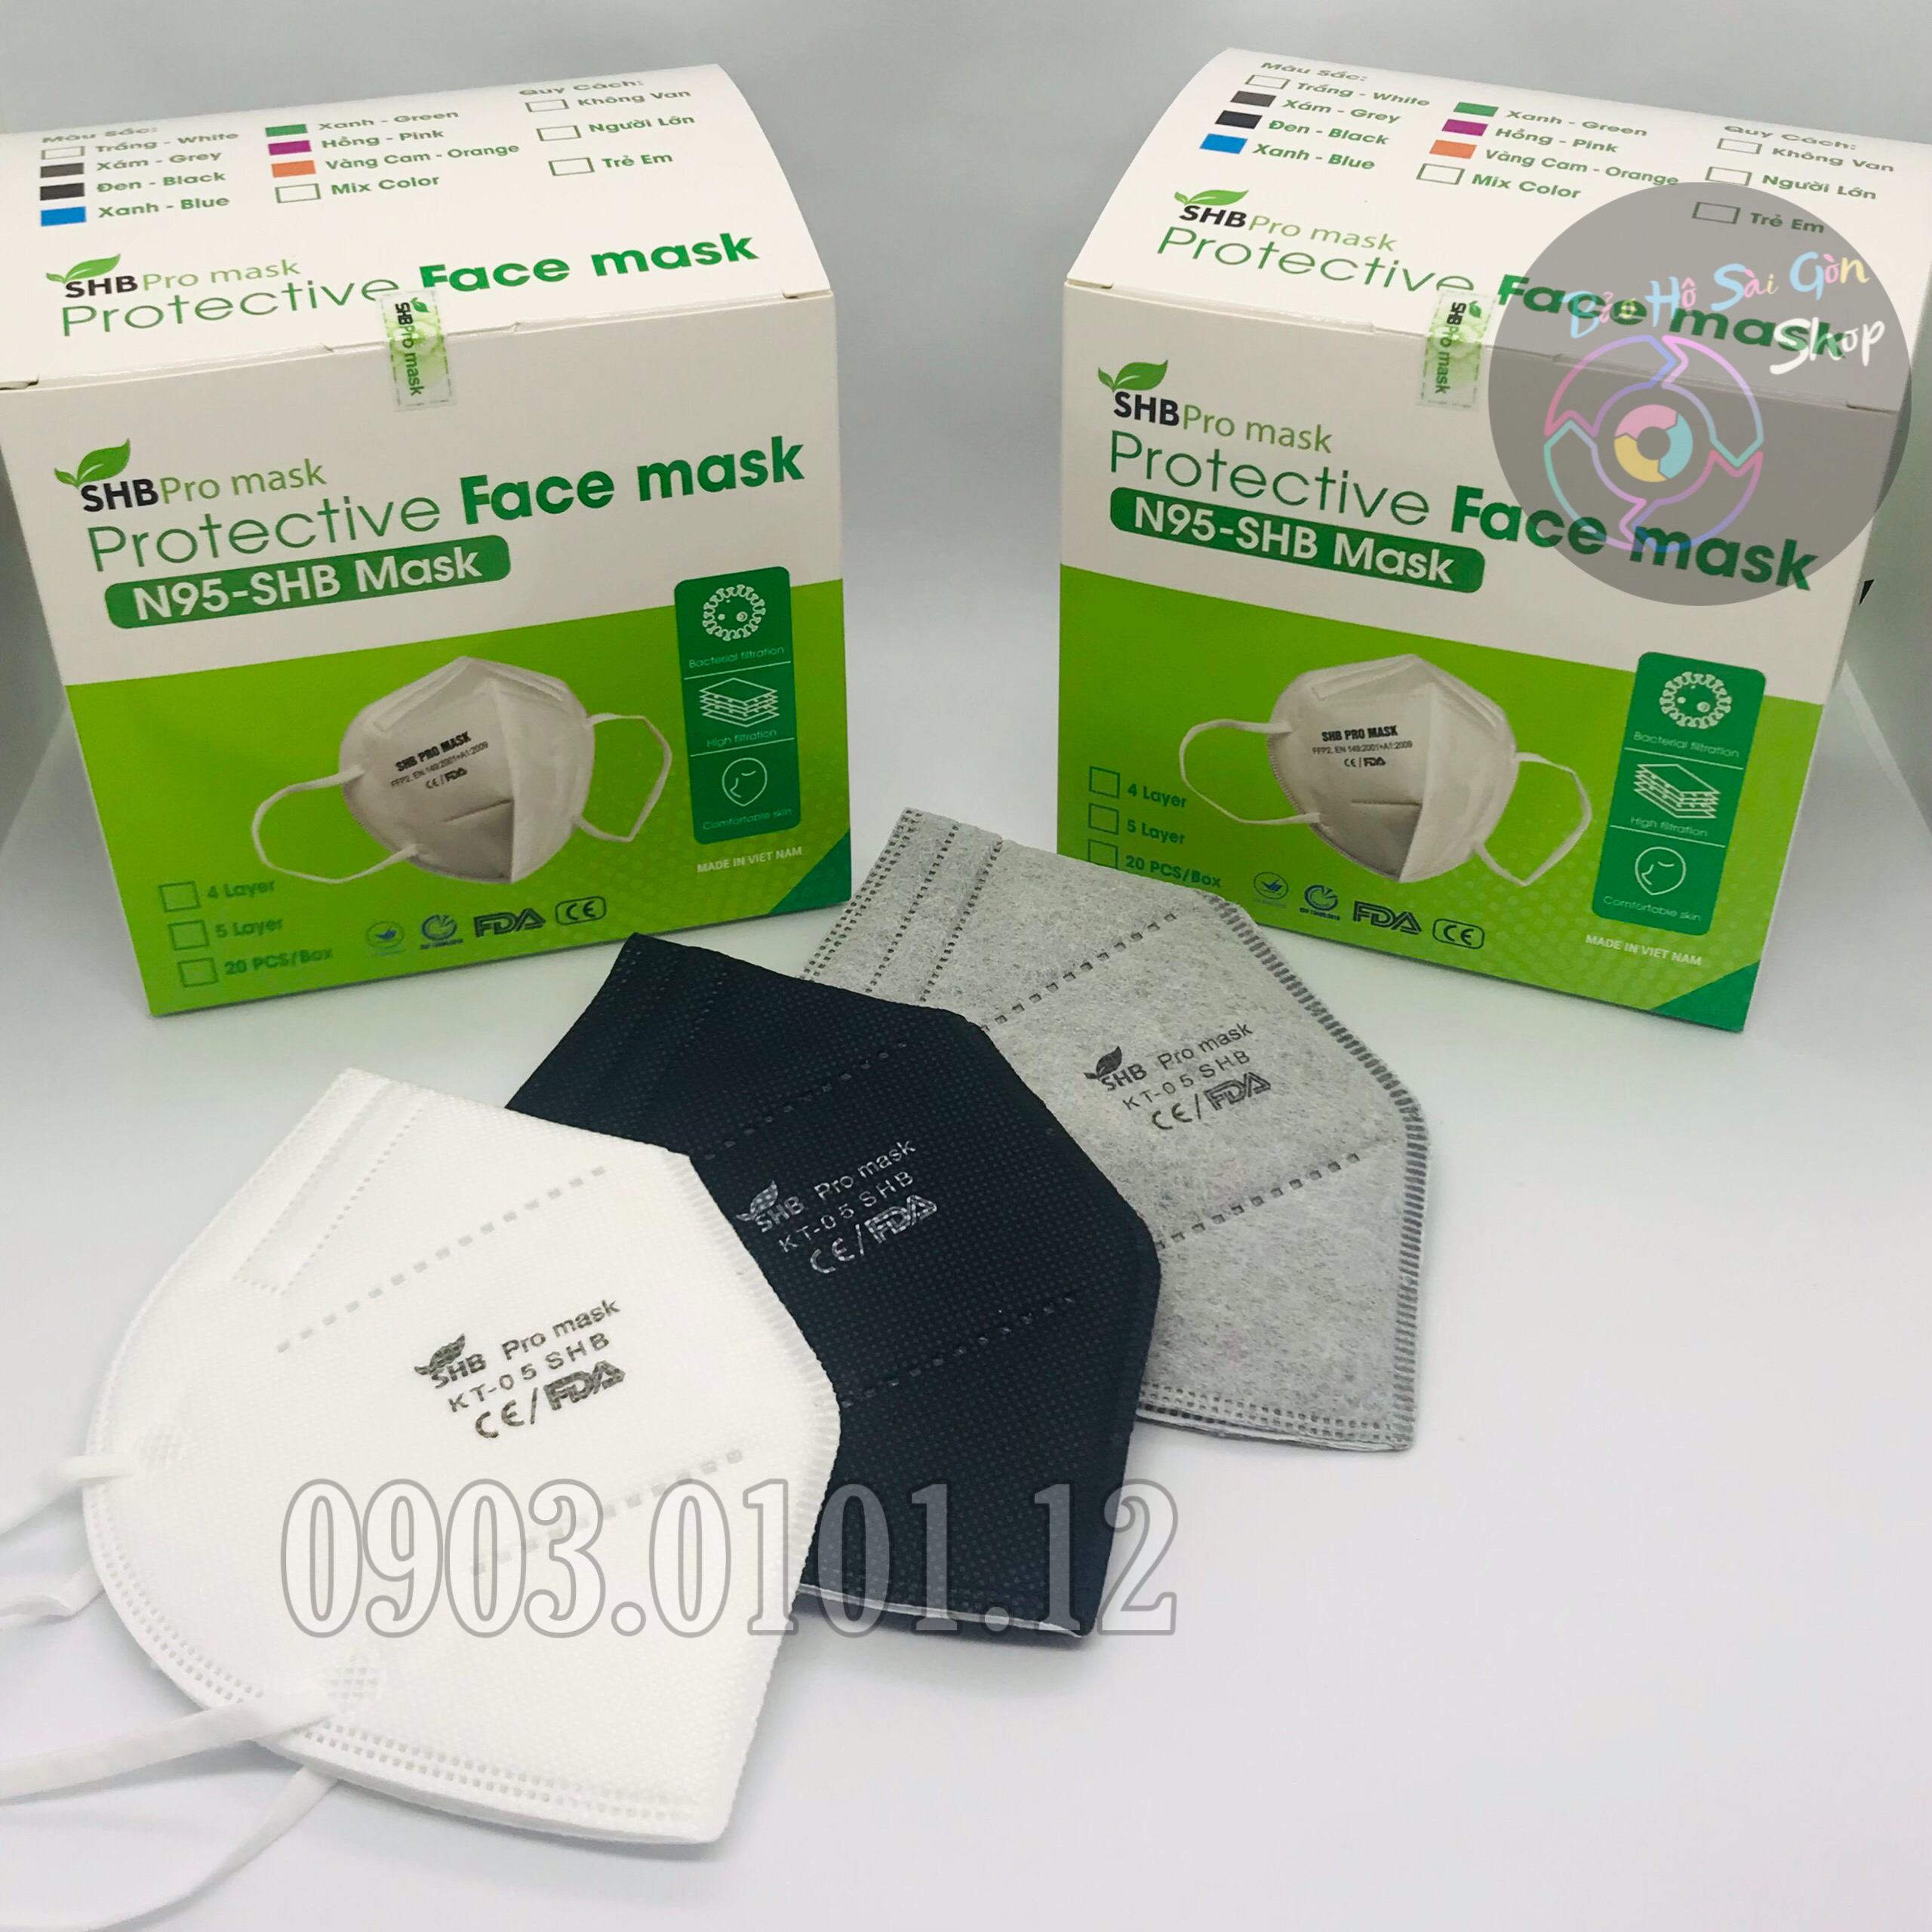 Khẩu trang n95 SHB Pro mask chính hãng, Kn95 cao cấp 5 lớp kháng khuẩn chuẩn FFP2 (hộp 20 cái)